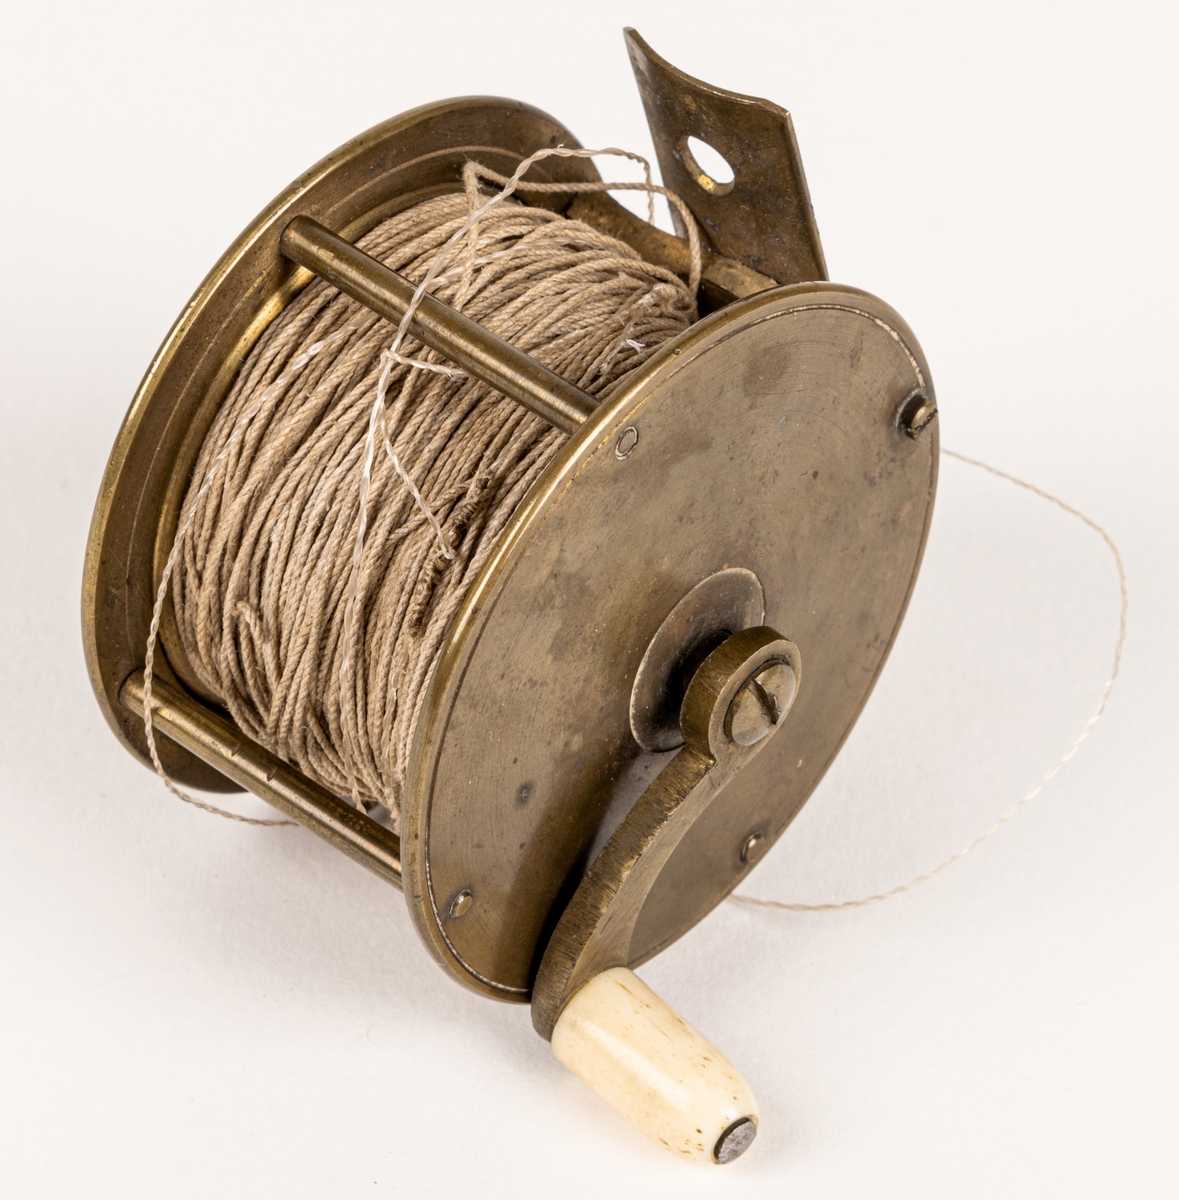 Kastspörulle av mässing. Har använts vid laxfiske. Tvinnad rev av lin. Från 1870-talet.